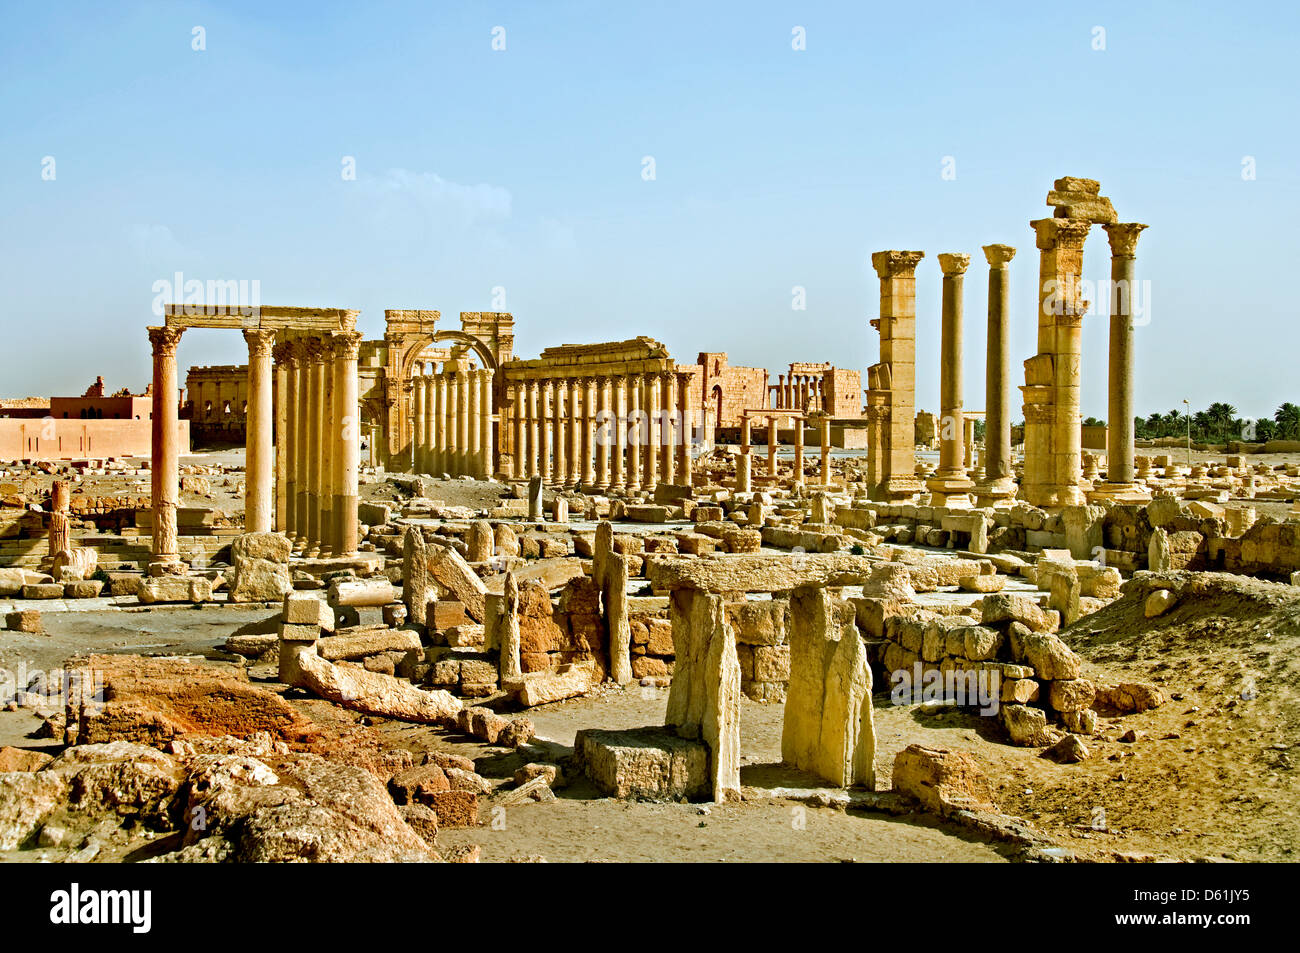 Arco de Triunfo 2 céntimos Palmira Siria Siria romana ( ISIS militantes han destruido el icónico Arco del Triunfo en Palmira ) Foto de stock